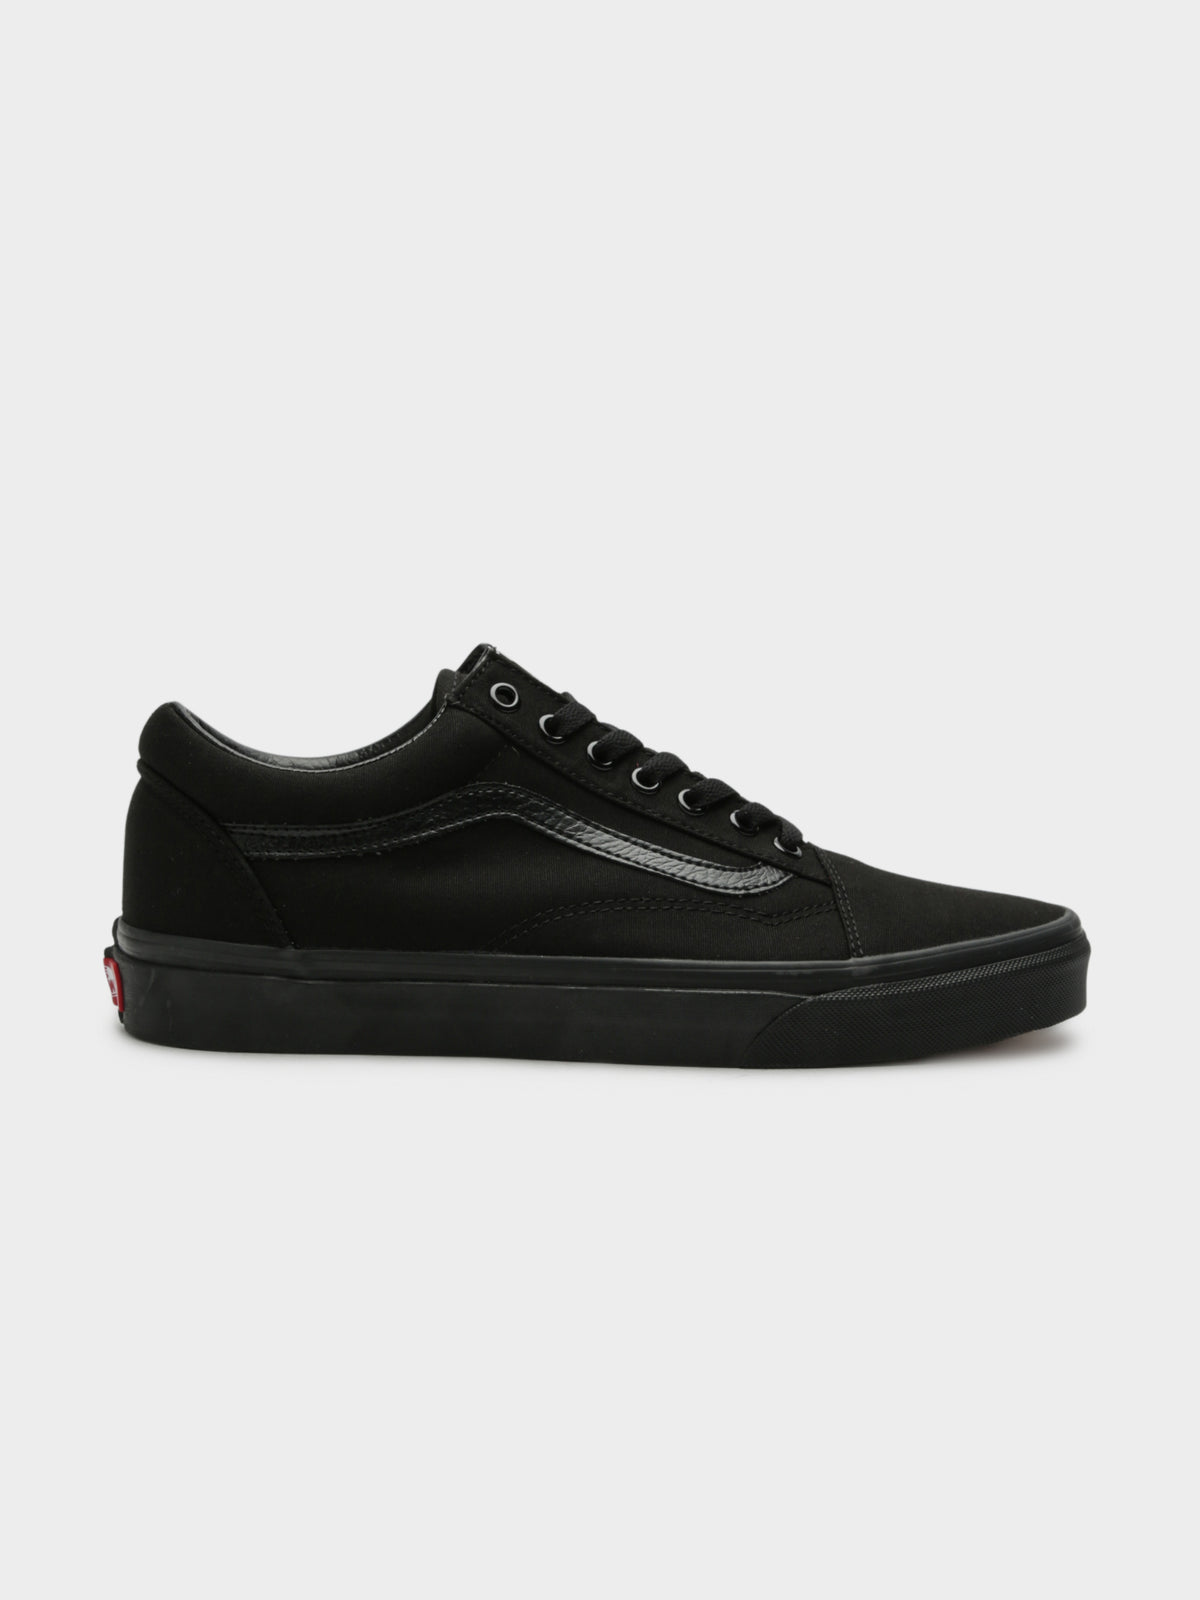 Unisex Old Skool Sneakers in All Black